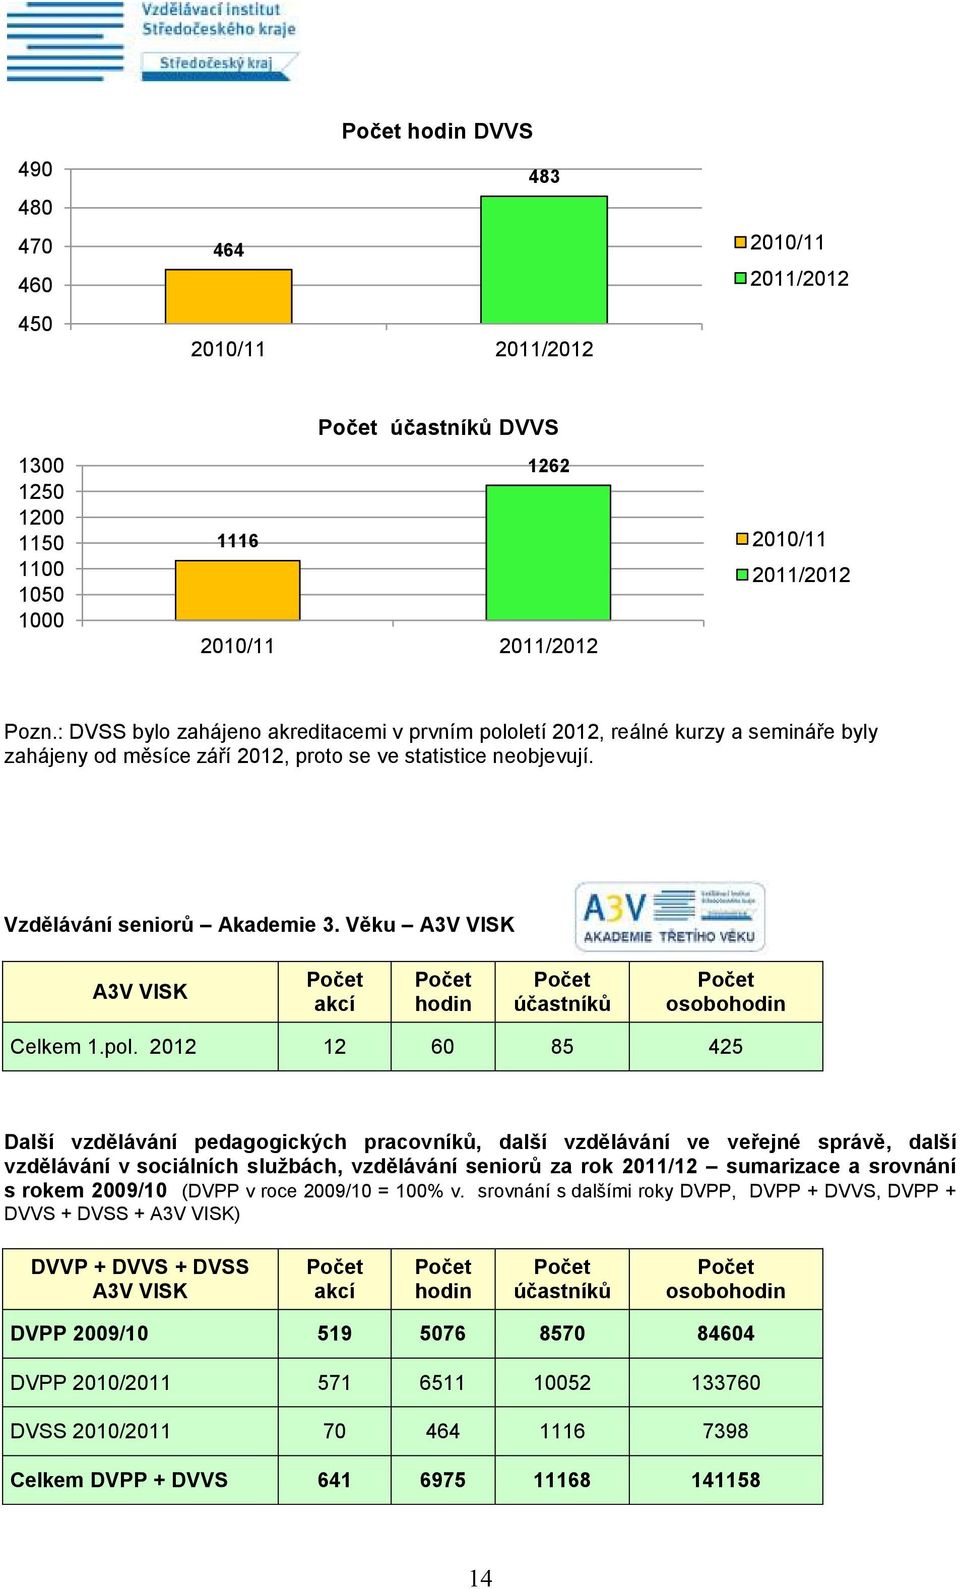 Věku A3V VISK A3V VISK akcí hodin účastníků osobohodin Celkem 1.pol.